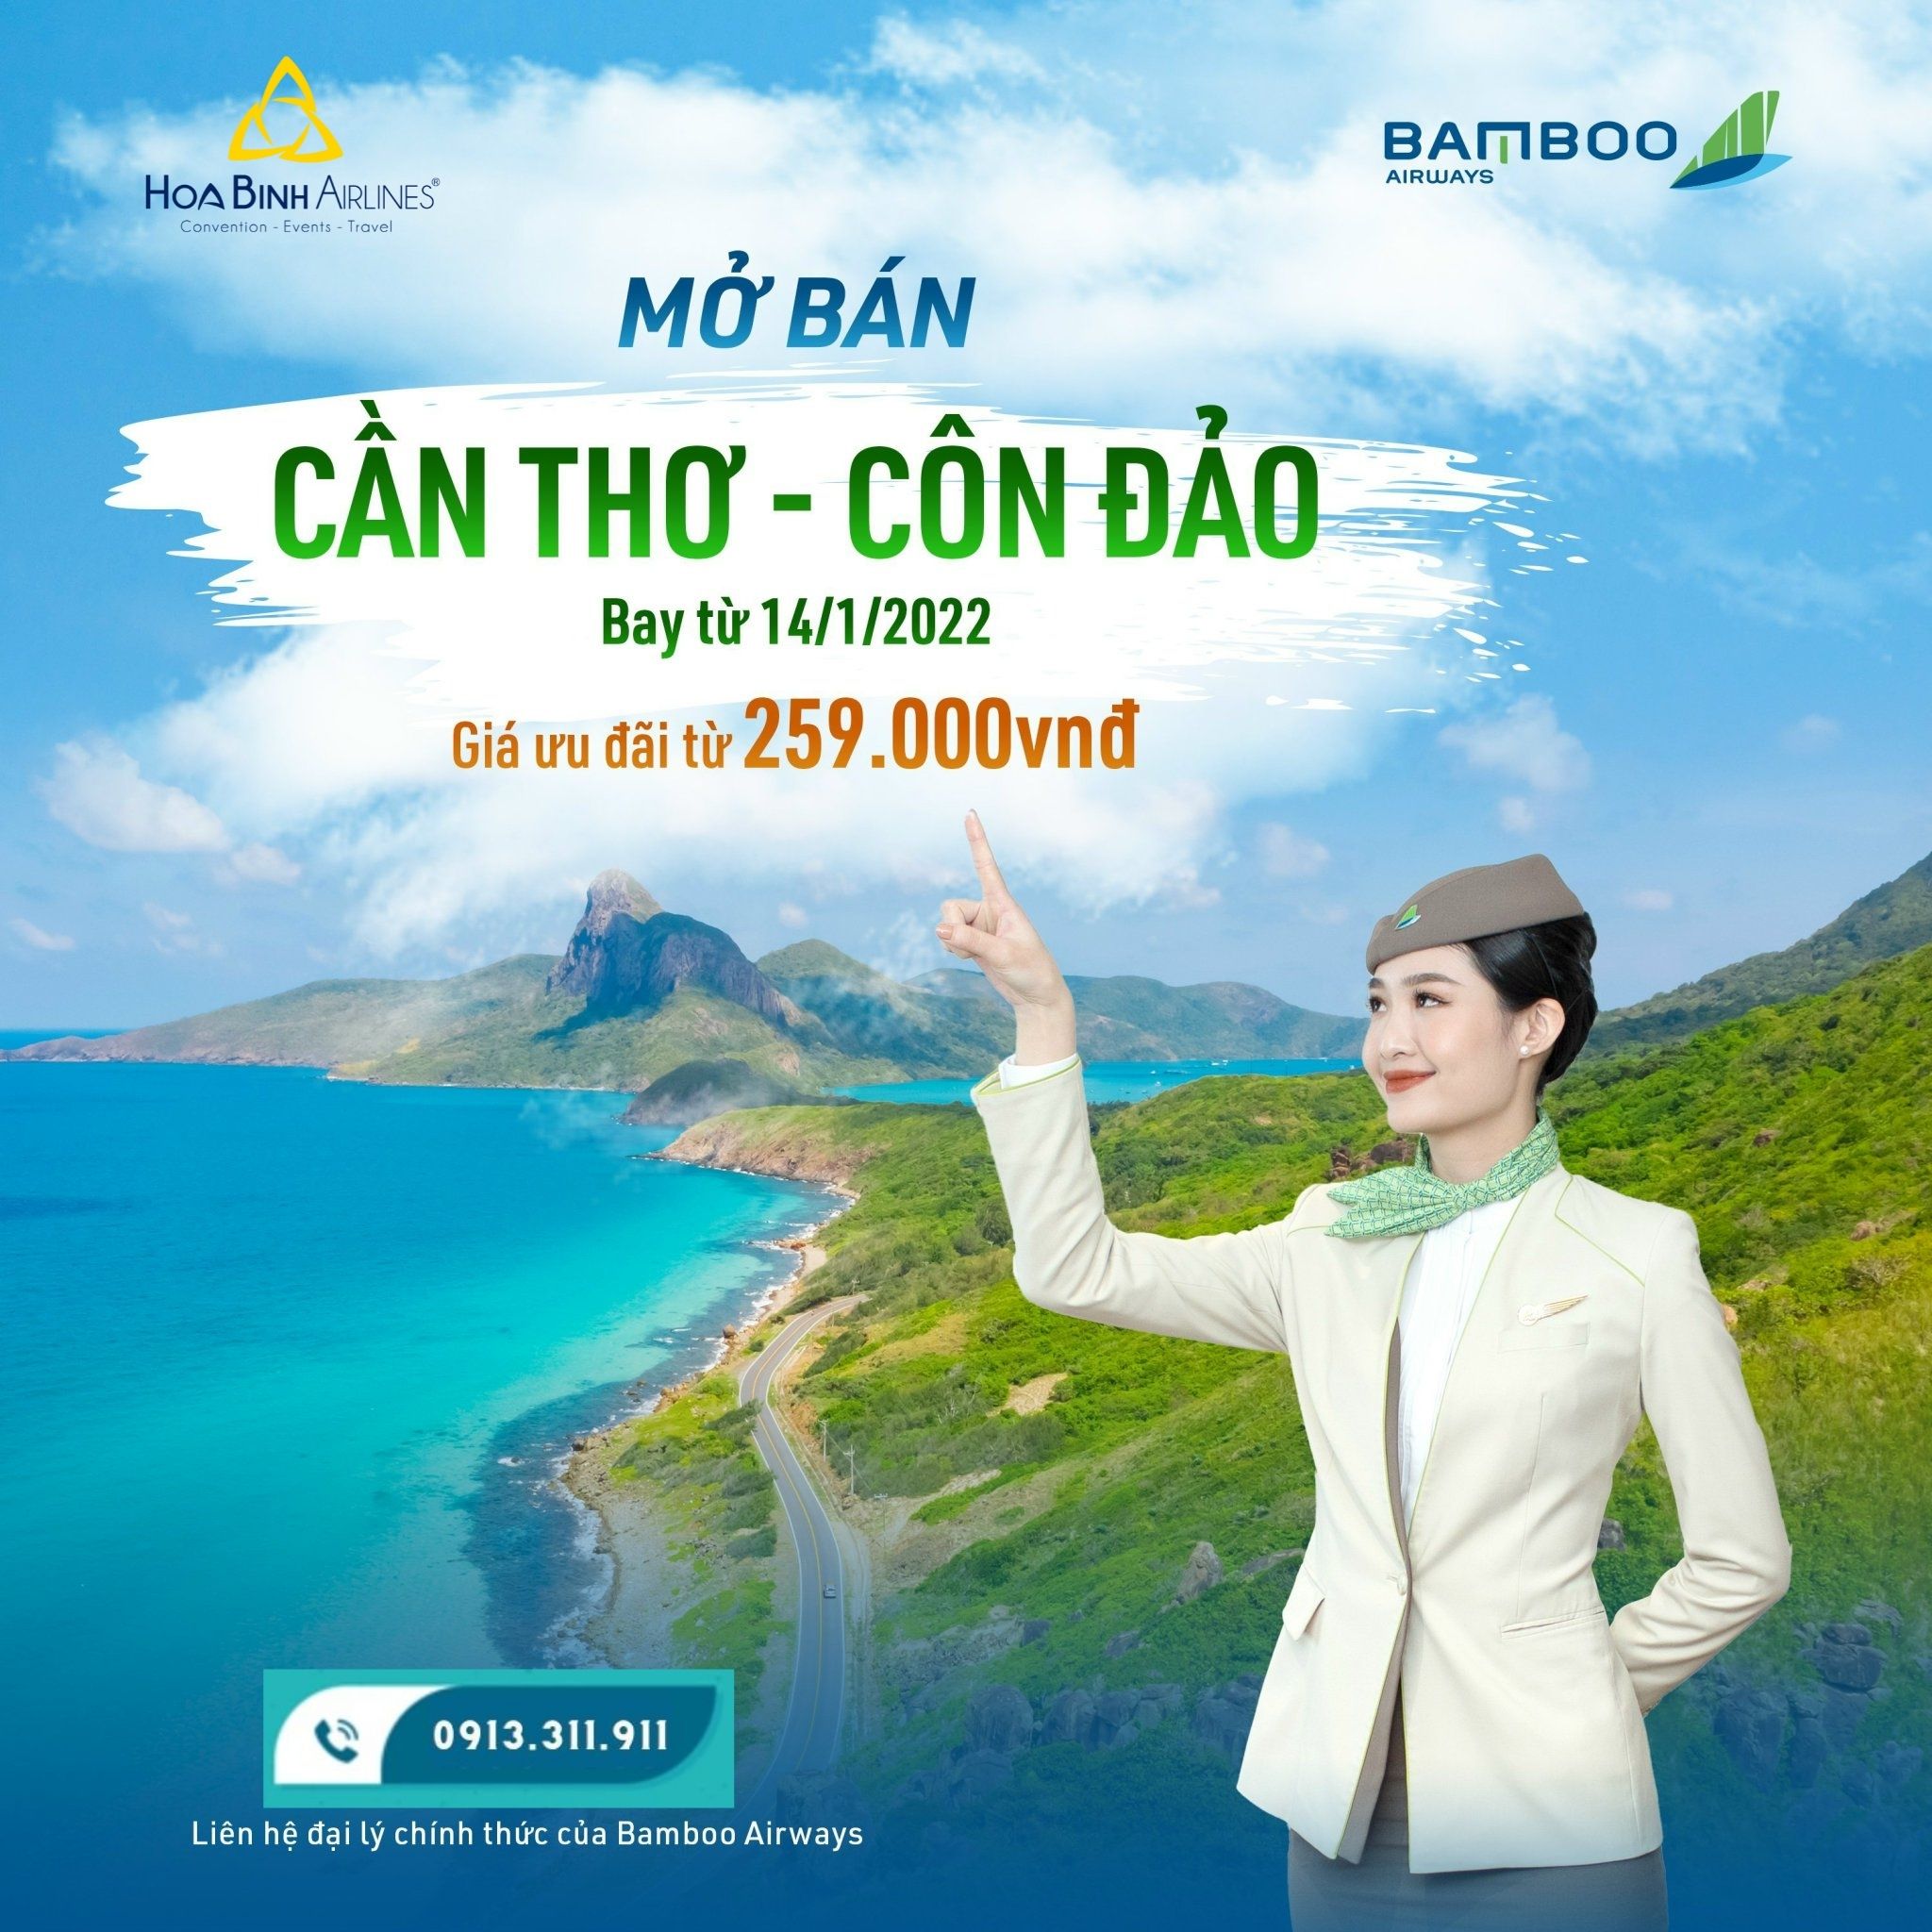 Bamboo Airways mở bán vé máy bay Cần Thơ - Côn Đảo từ 259k